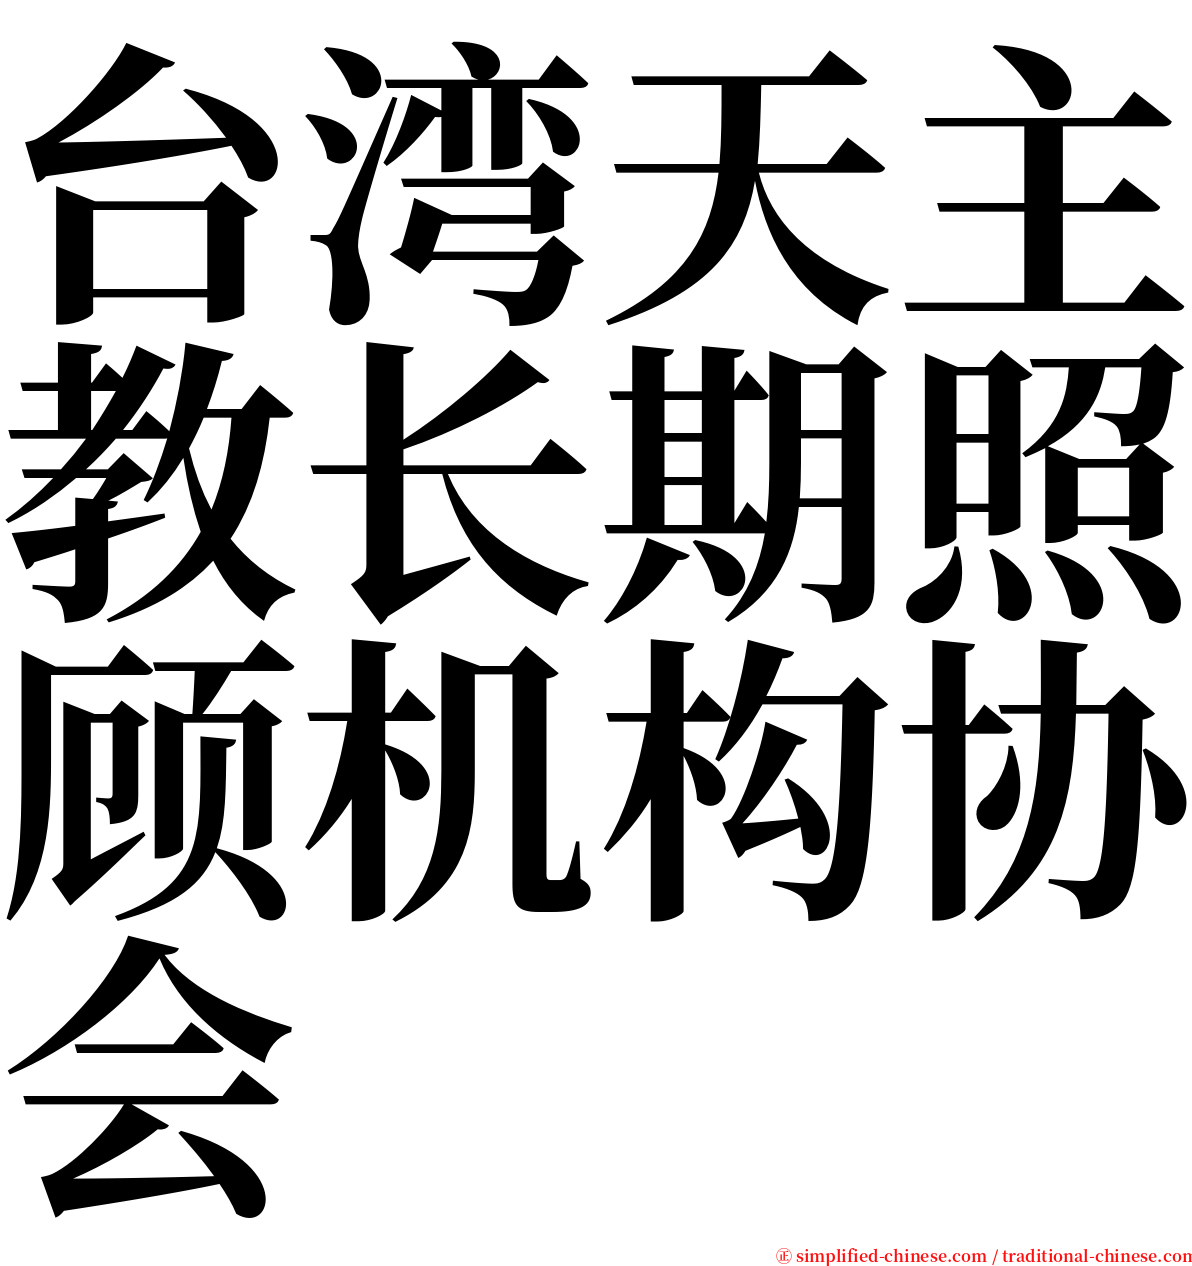 台湾天主教长期照顾机构协会 serif font